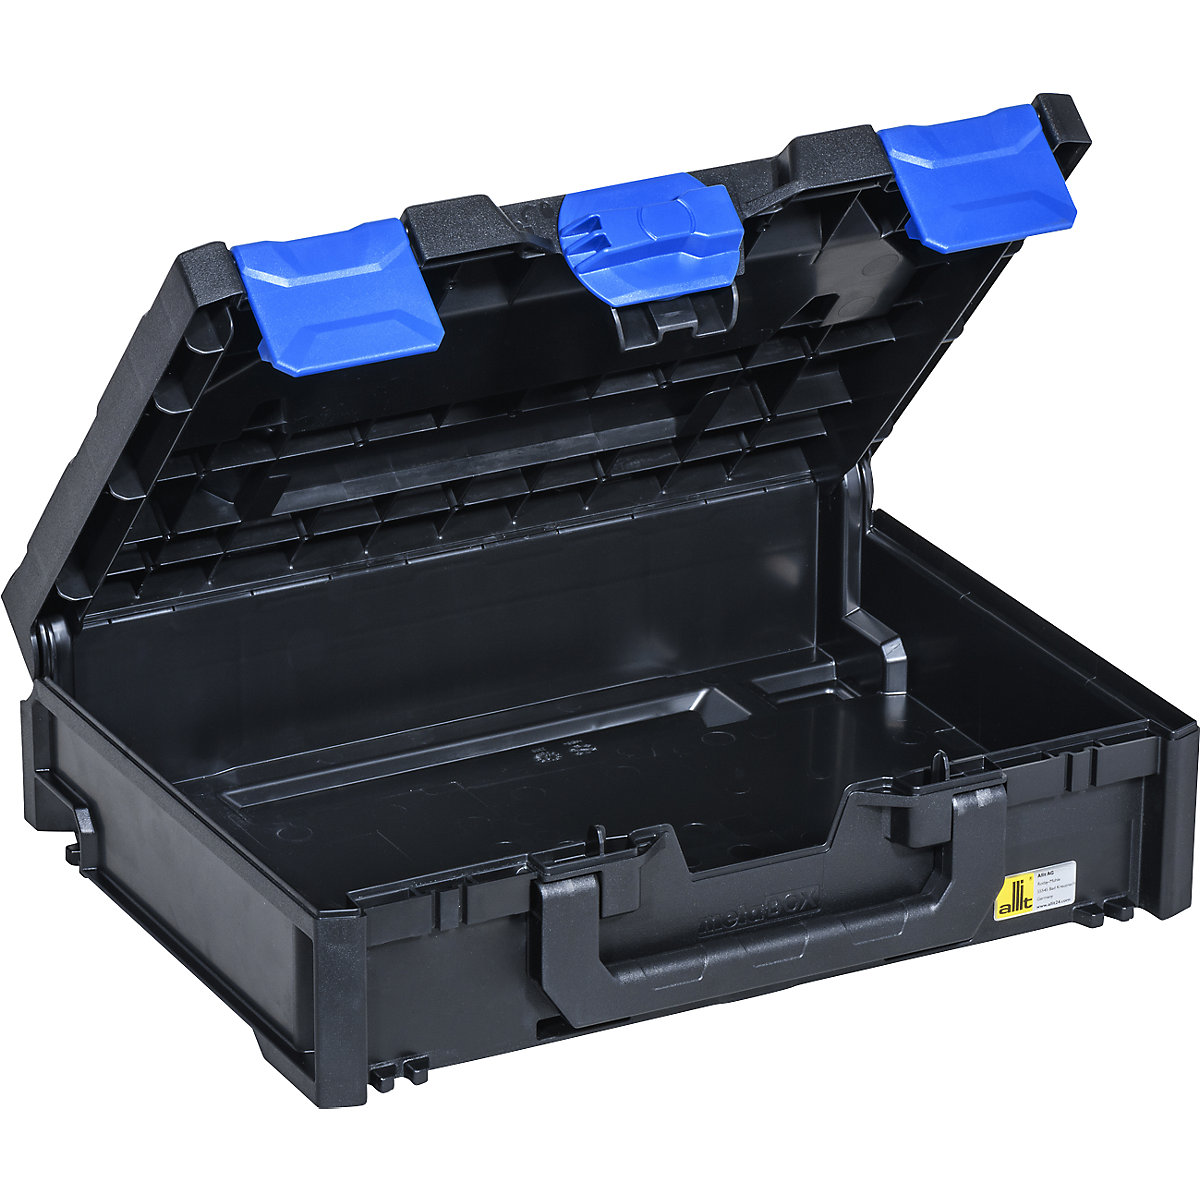 Transport- und Aufbewahrungsbox, schwarz/blau, ABS, Außen-LxBxH 396 x 296 x 118 mm